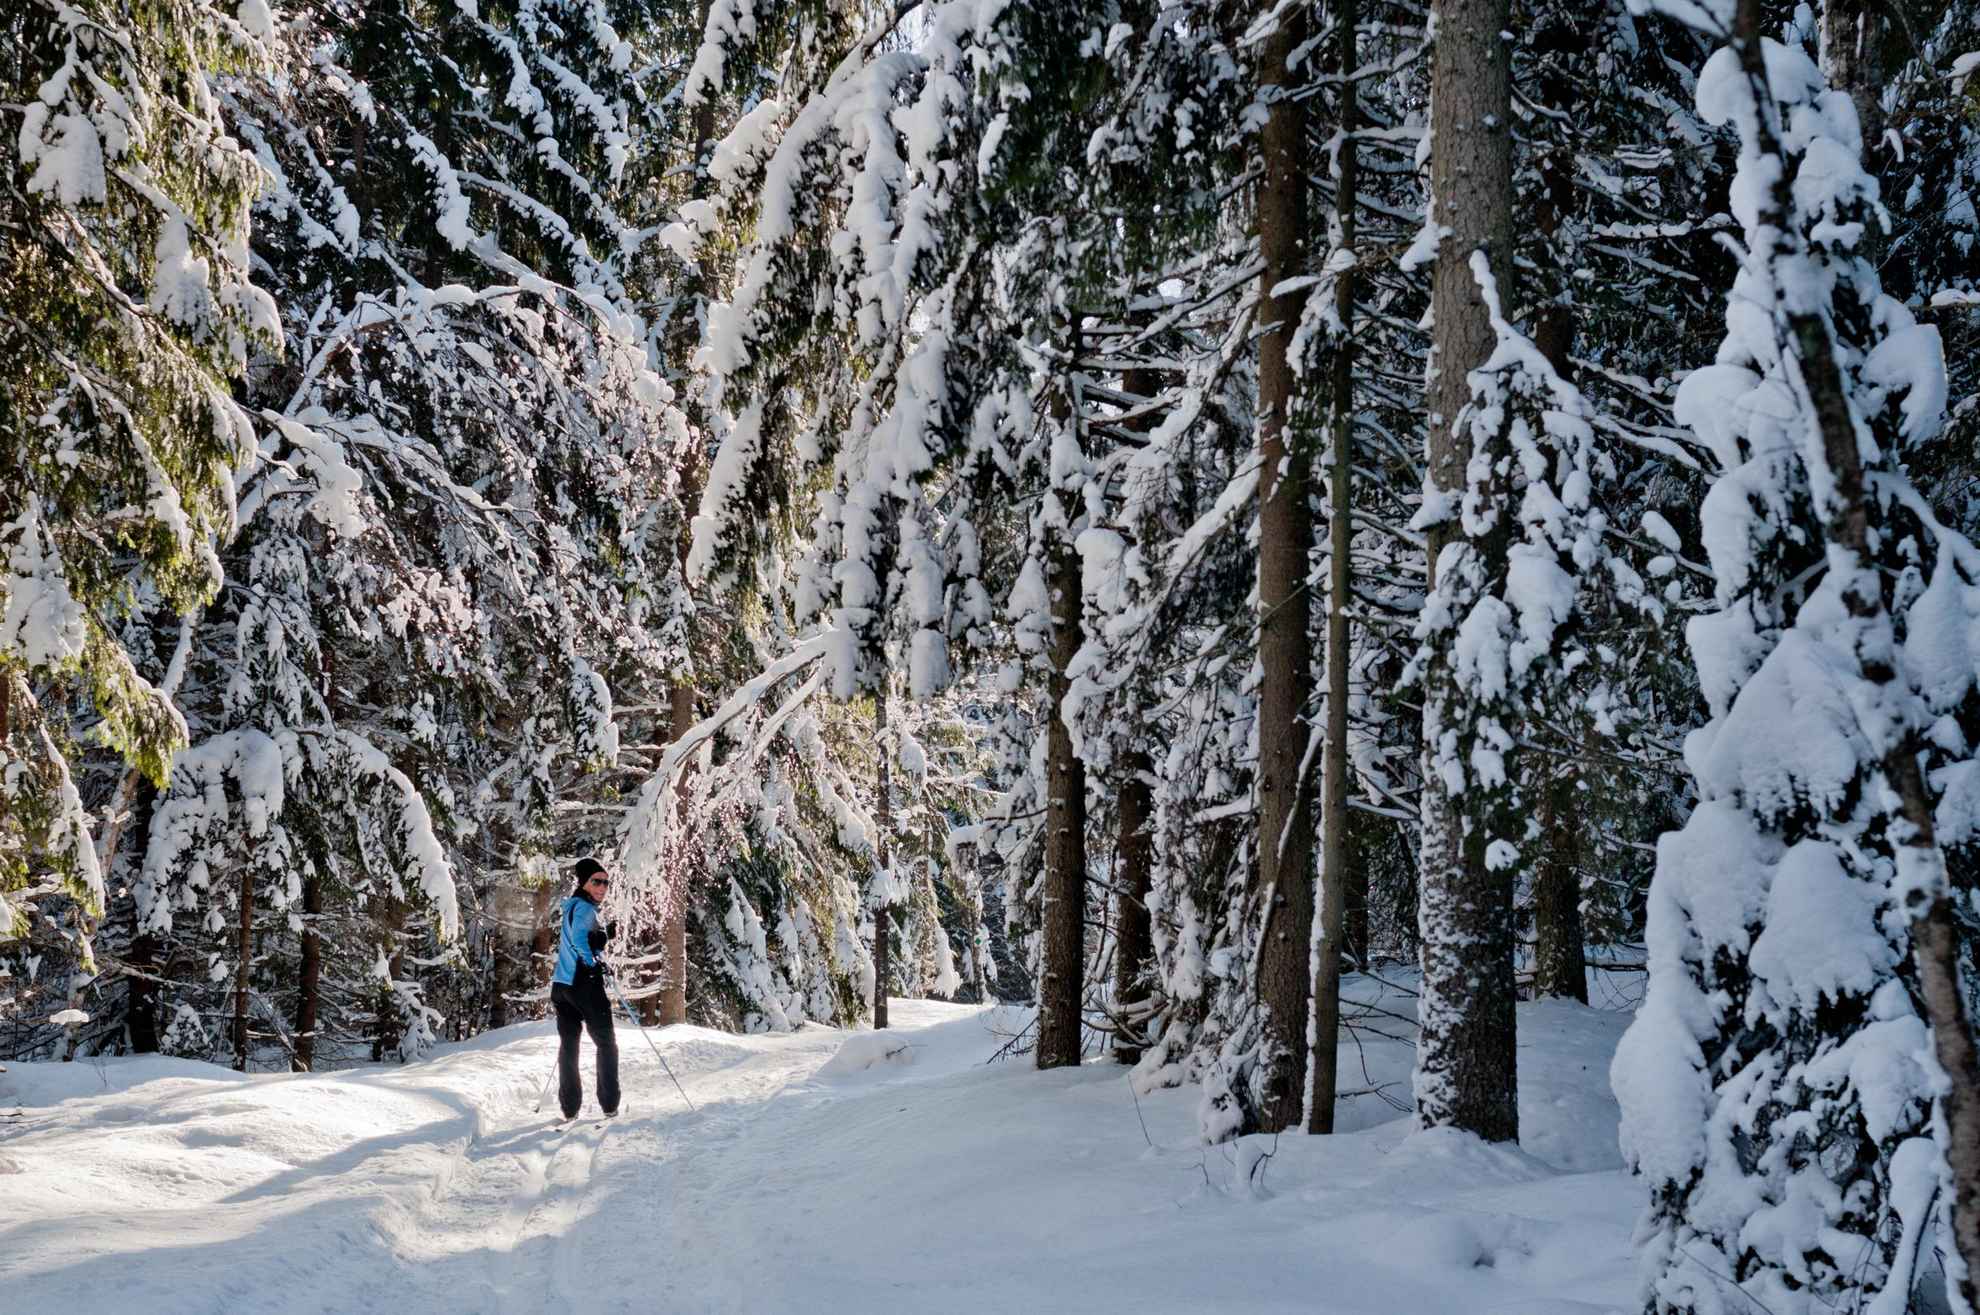 Een besneeuwd landschap met bomen en een persoon aan het langlaufen.